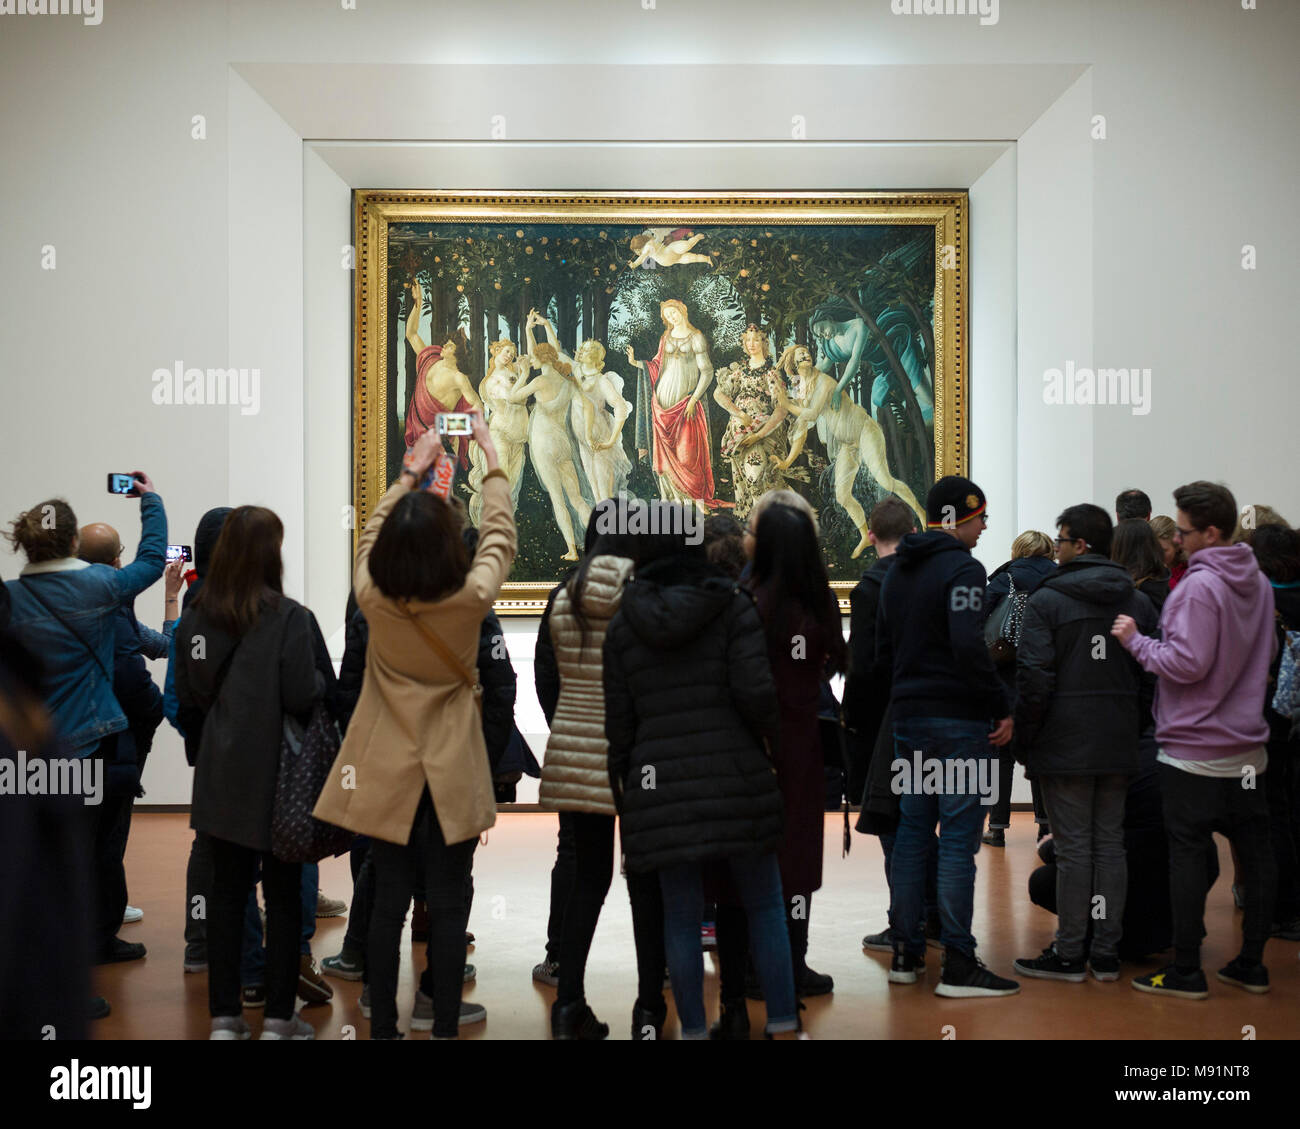 Florenz. Italien. Galerie der Uffizien. Besucher die Allegorie des Frühlings Malerei von Sandro Botticelli (C. 1482). Galleria degli Uffizi. Stockfoto